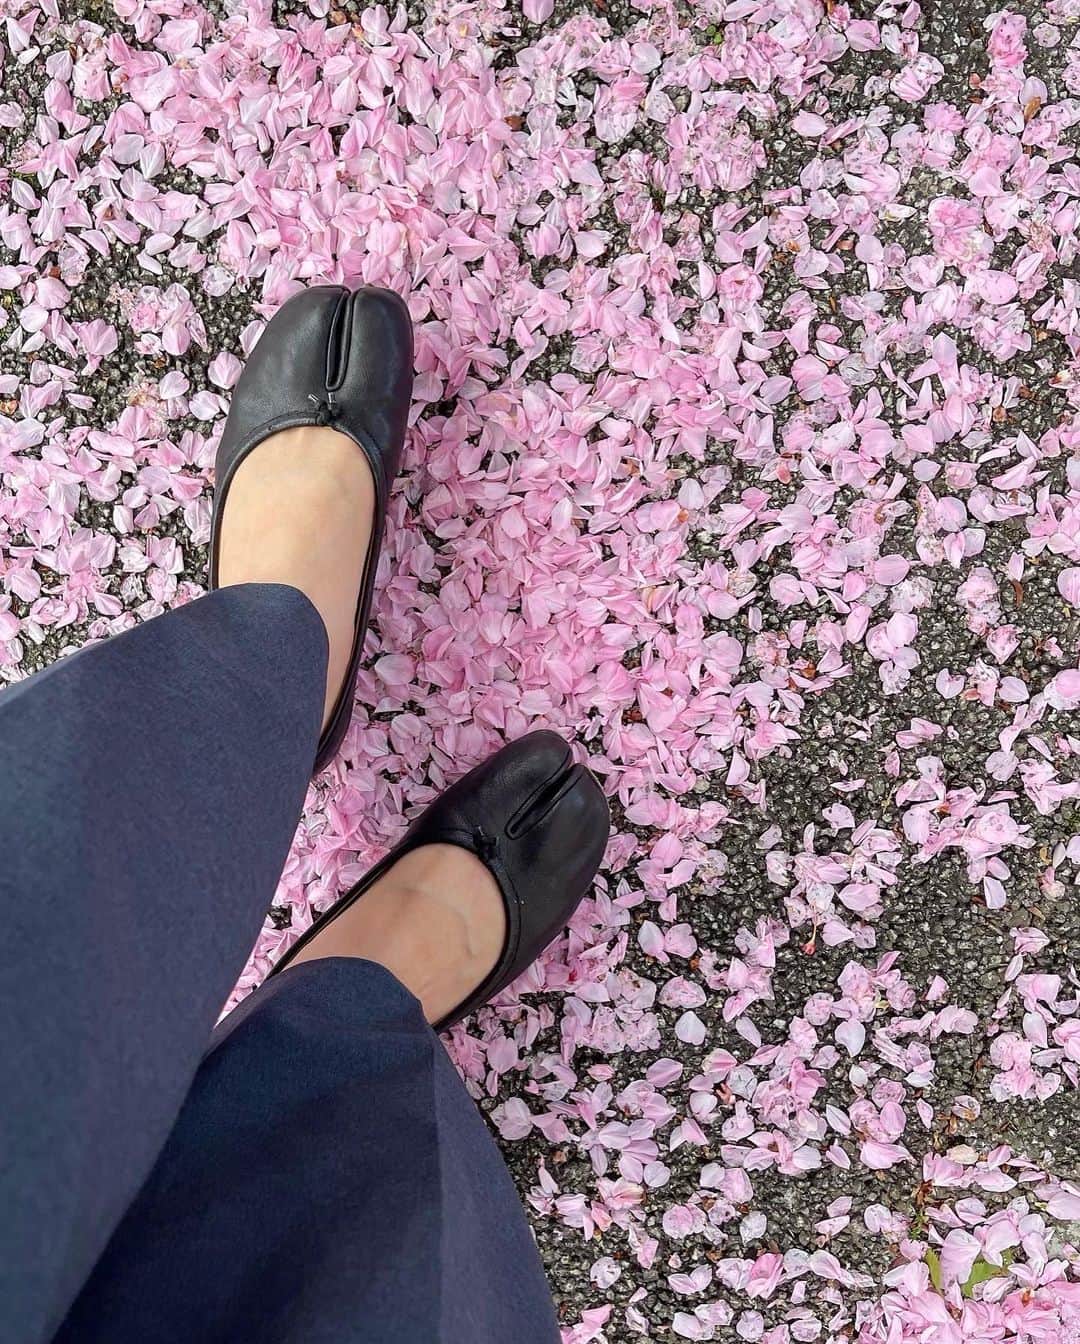 衛藤美彩のインスタグラム：「⁡ ⁡ 今日の 息子とのお散歩中の出来事🌸 ⁡ もう木に桜がなくなっちゃって寂しいね。 でも、この緑の葉っぱも綺麗だね。 これから雨が沢山降って、 紫陽花やかたつむりさんが出てきて その後に、あつーいあつーい夏が来るよ。 また桜に会えるのは来年だから 楽しみに待っていようねってお話しをして。 ⁡ そんな息子が今日、 私が話しかけた 絶妙なタイミングで まるで会話の中身が分かっているかのように これまでにない特大級の最高な笑顔を見せてくれて。 息子ニッコニコで、こちらは大号泣😂 ⁡ 赤ちゃんはまだ会話はできないけど ちゃんと、全部聞いているし分かってると思う。 だから内容が理解できないことでも 毎日毎日話しかけていたから これはほんっとに嬉しい出来事でした。 ⁡ もっと大きくなって、早く公園で遊びたい！ 晴れの日はお弁当作って公園にテント張って 雨の日はレインコートを来て雨靴を履いて あめんぼやカタツムリの探検に出て... 想像しただけでワクワクする！ ⁡ 早く喋ってほしい 早く一緒に色々なところに行きたい 早く、早くって思っちゃうけど。笑 今この瞬間にしかない成長を しっかり目に焼き付けていきたいと思います😊⁡ ⁡ ⁡ ⁡ ⁡」